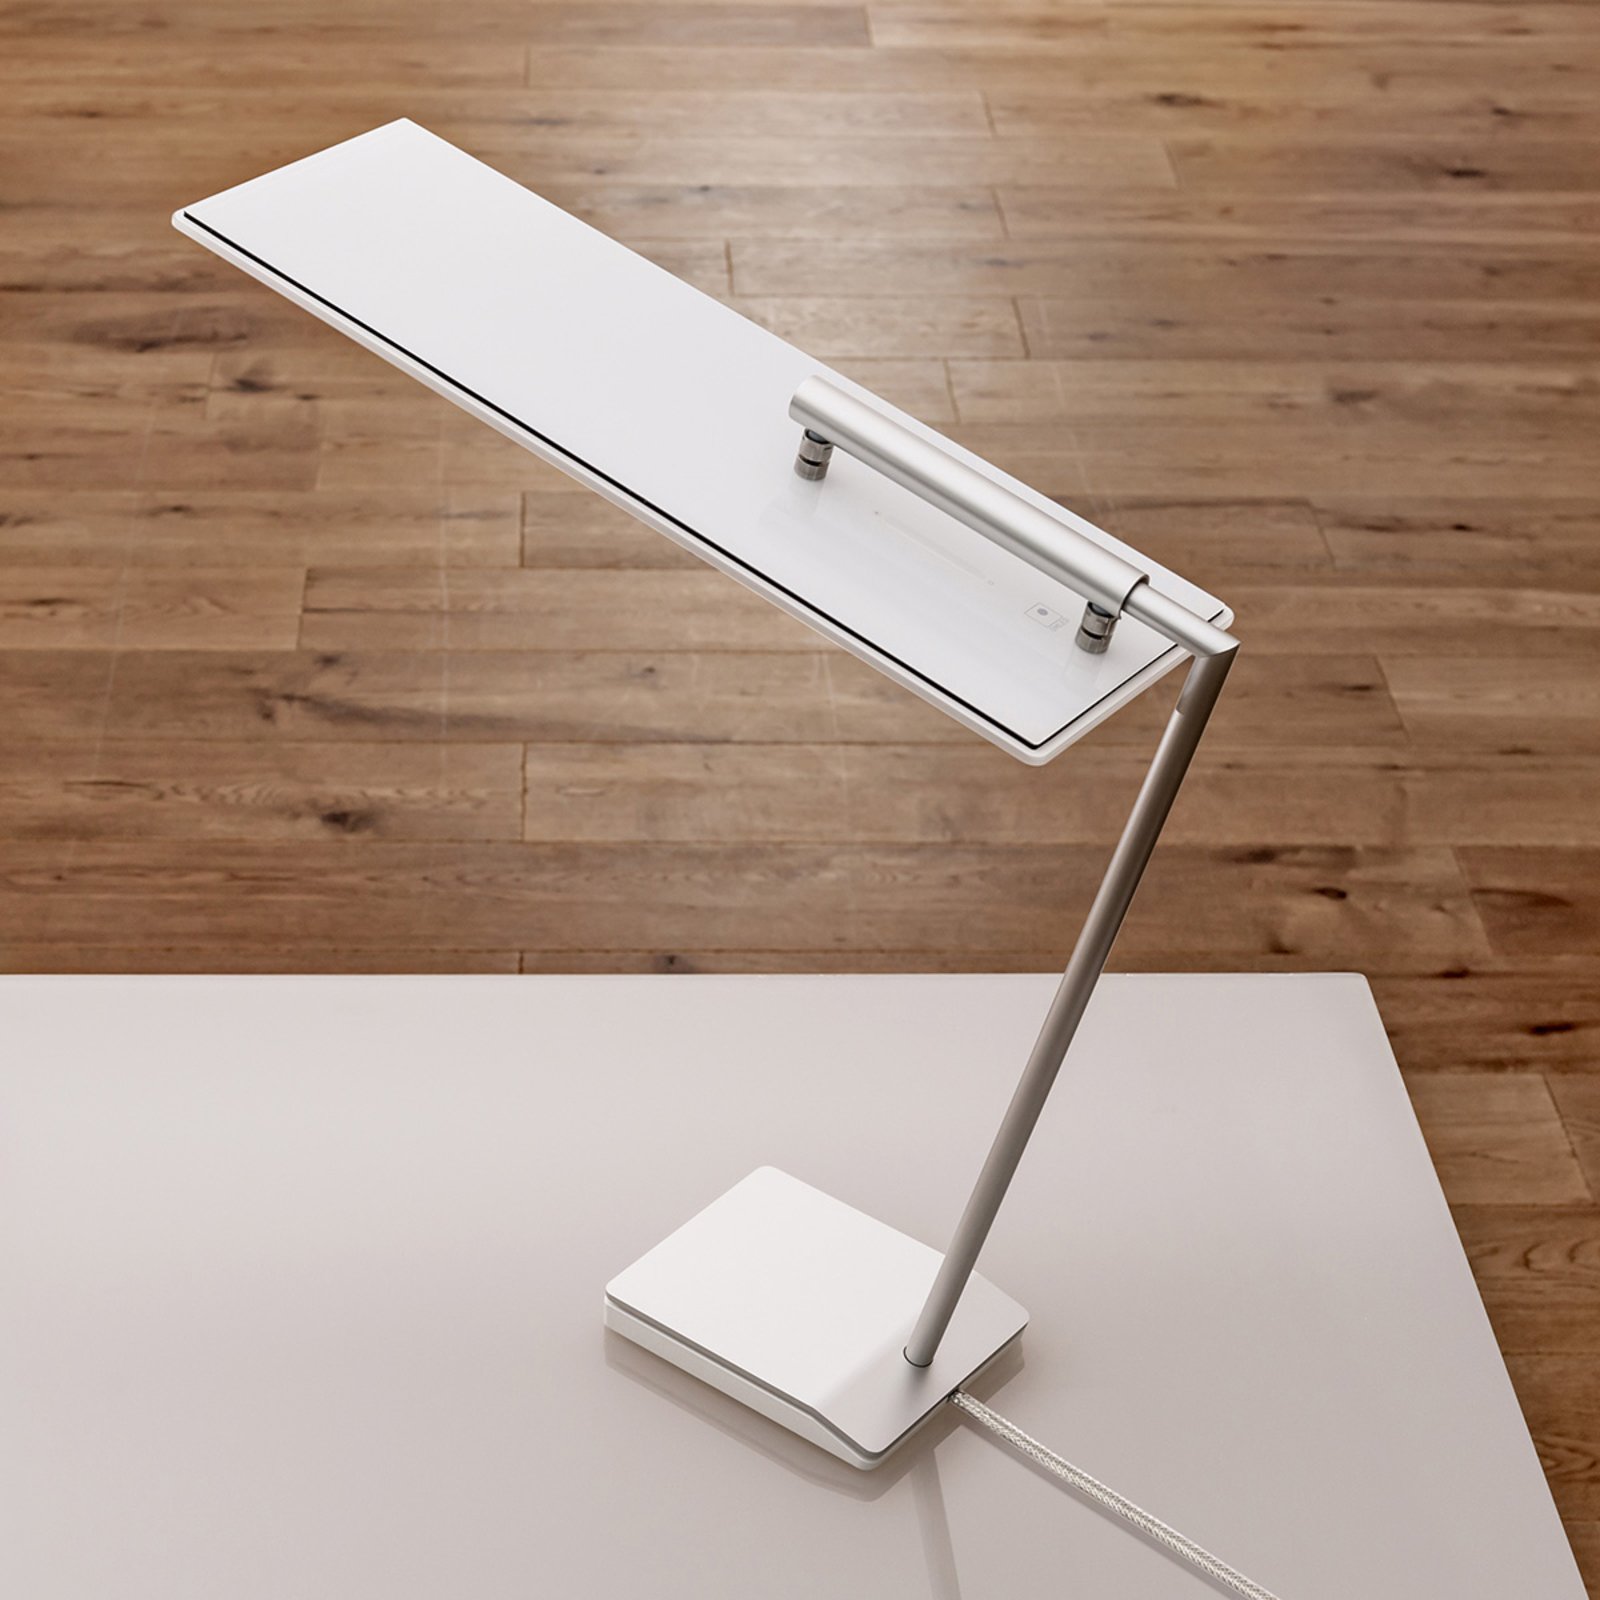 OLED stolní lampa OMLED One d3 bílá